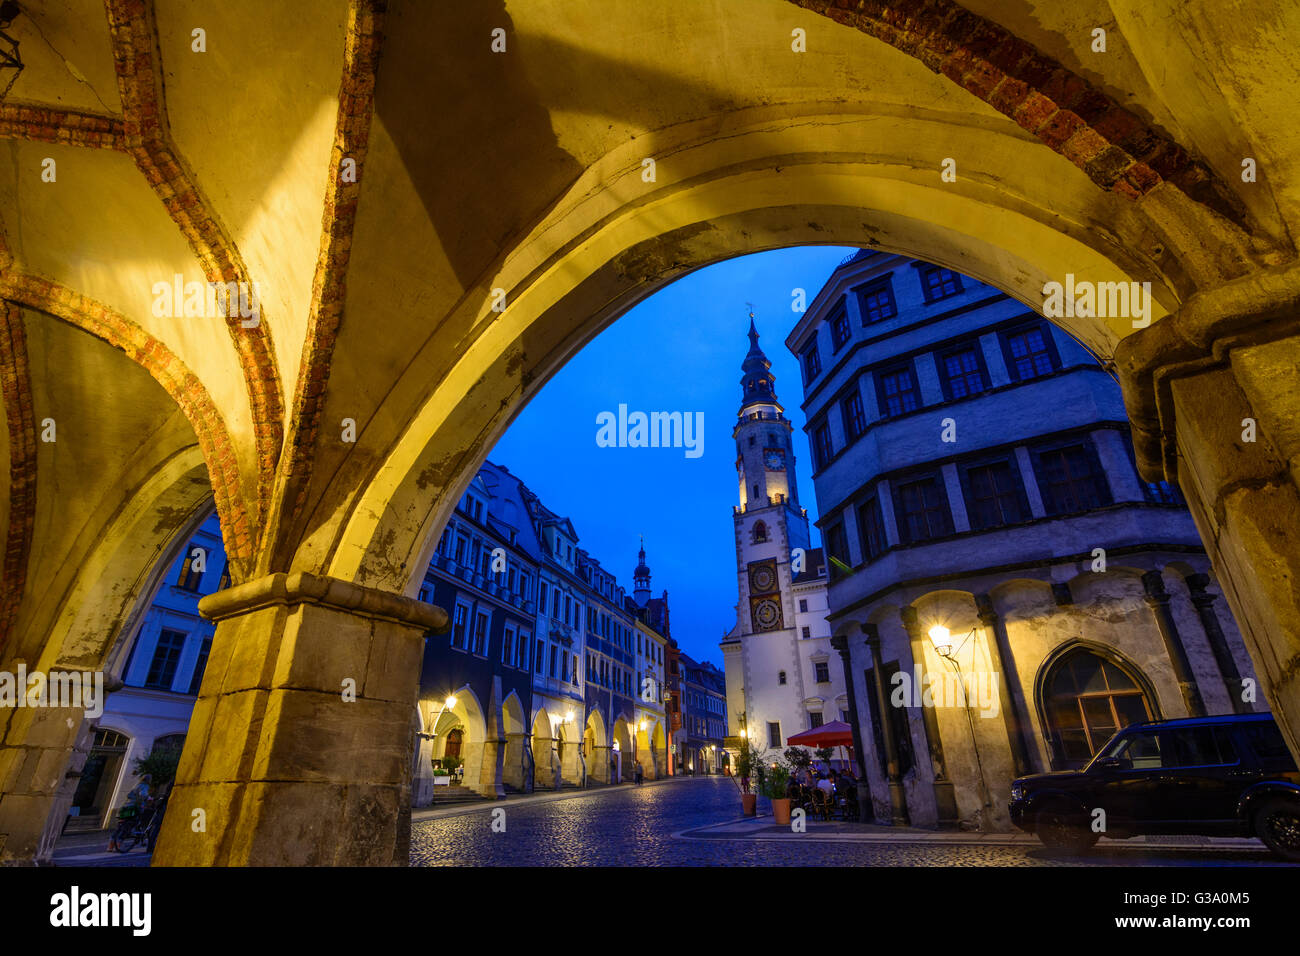 Untermarkt with town hall, looking through arcades, Germany, Sachsen, Saxony, , Görlitz Stock Photo